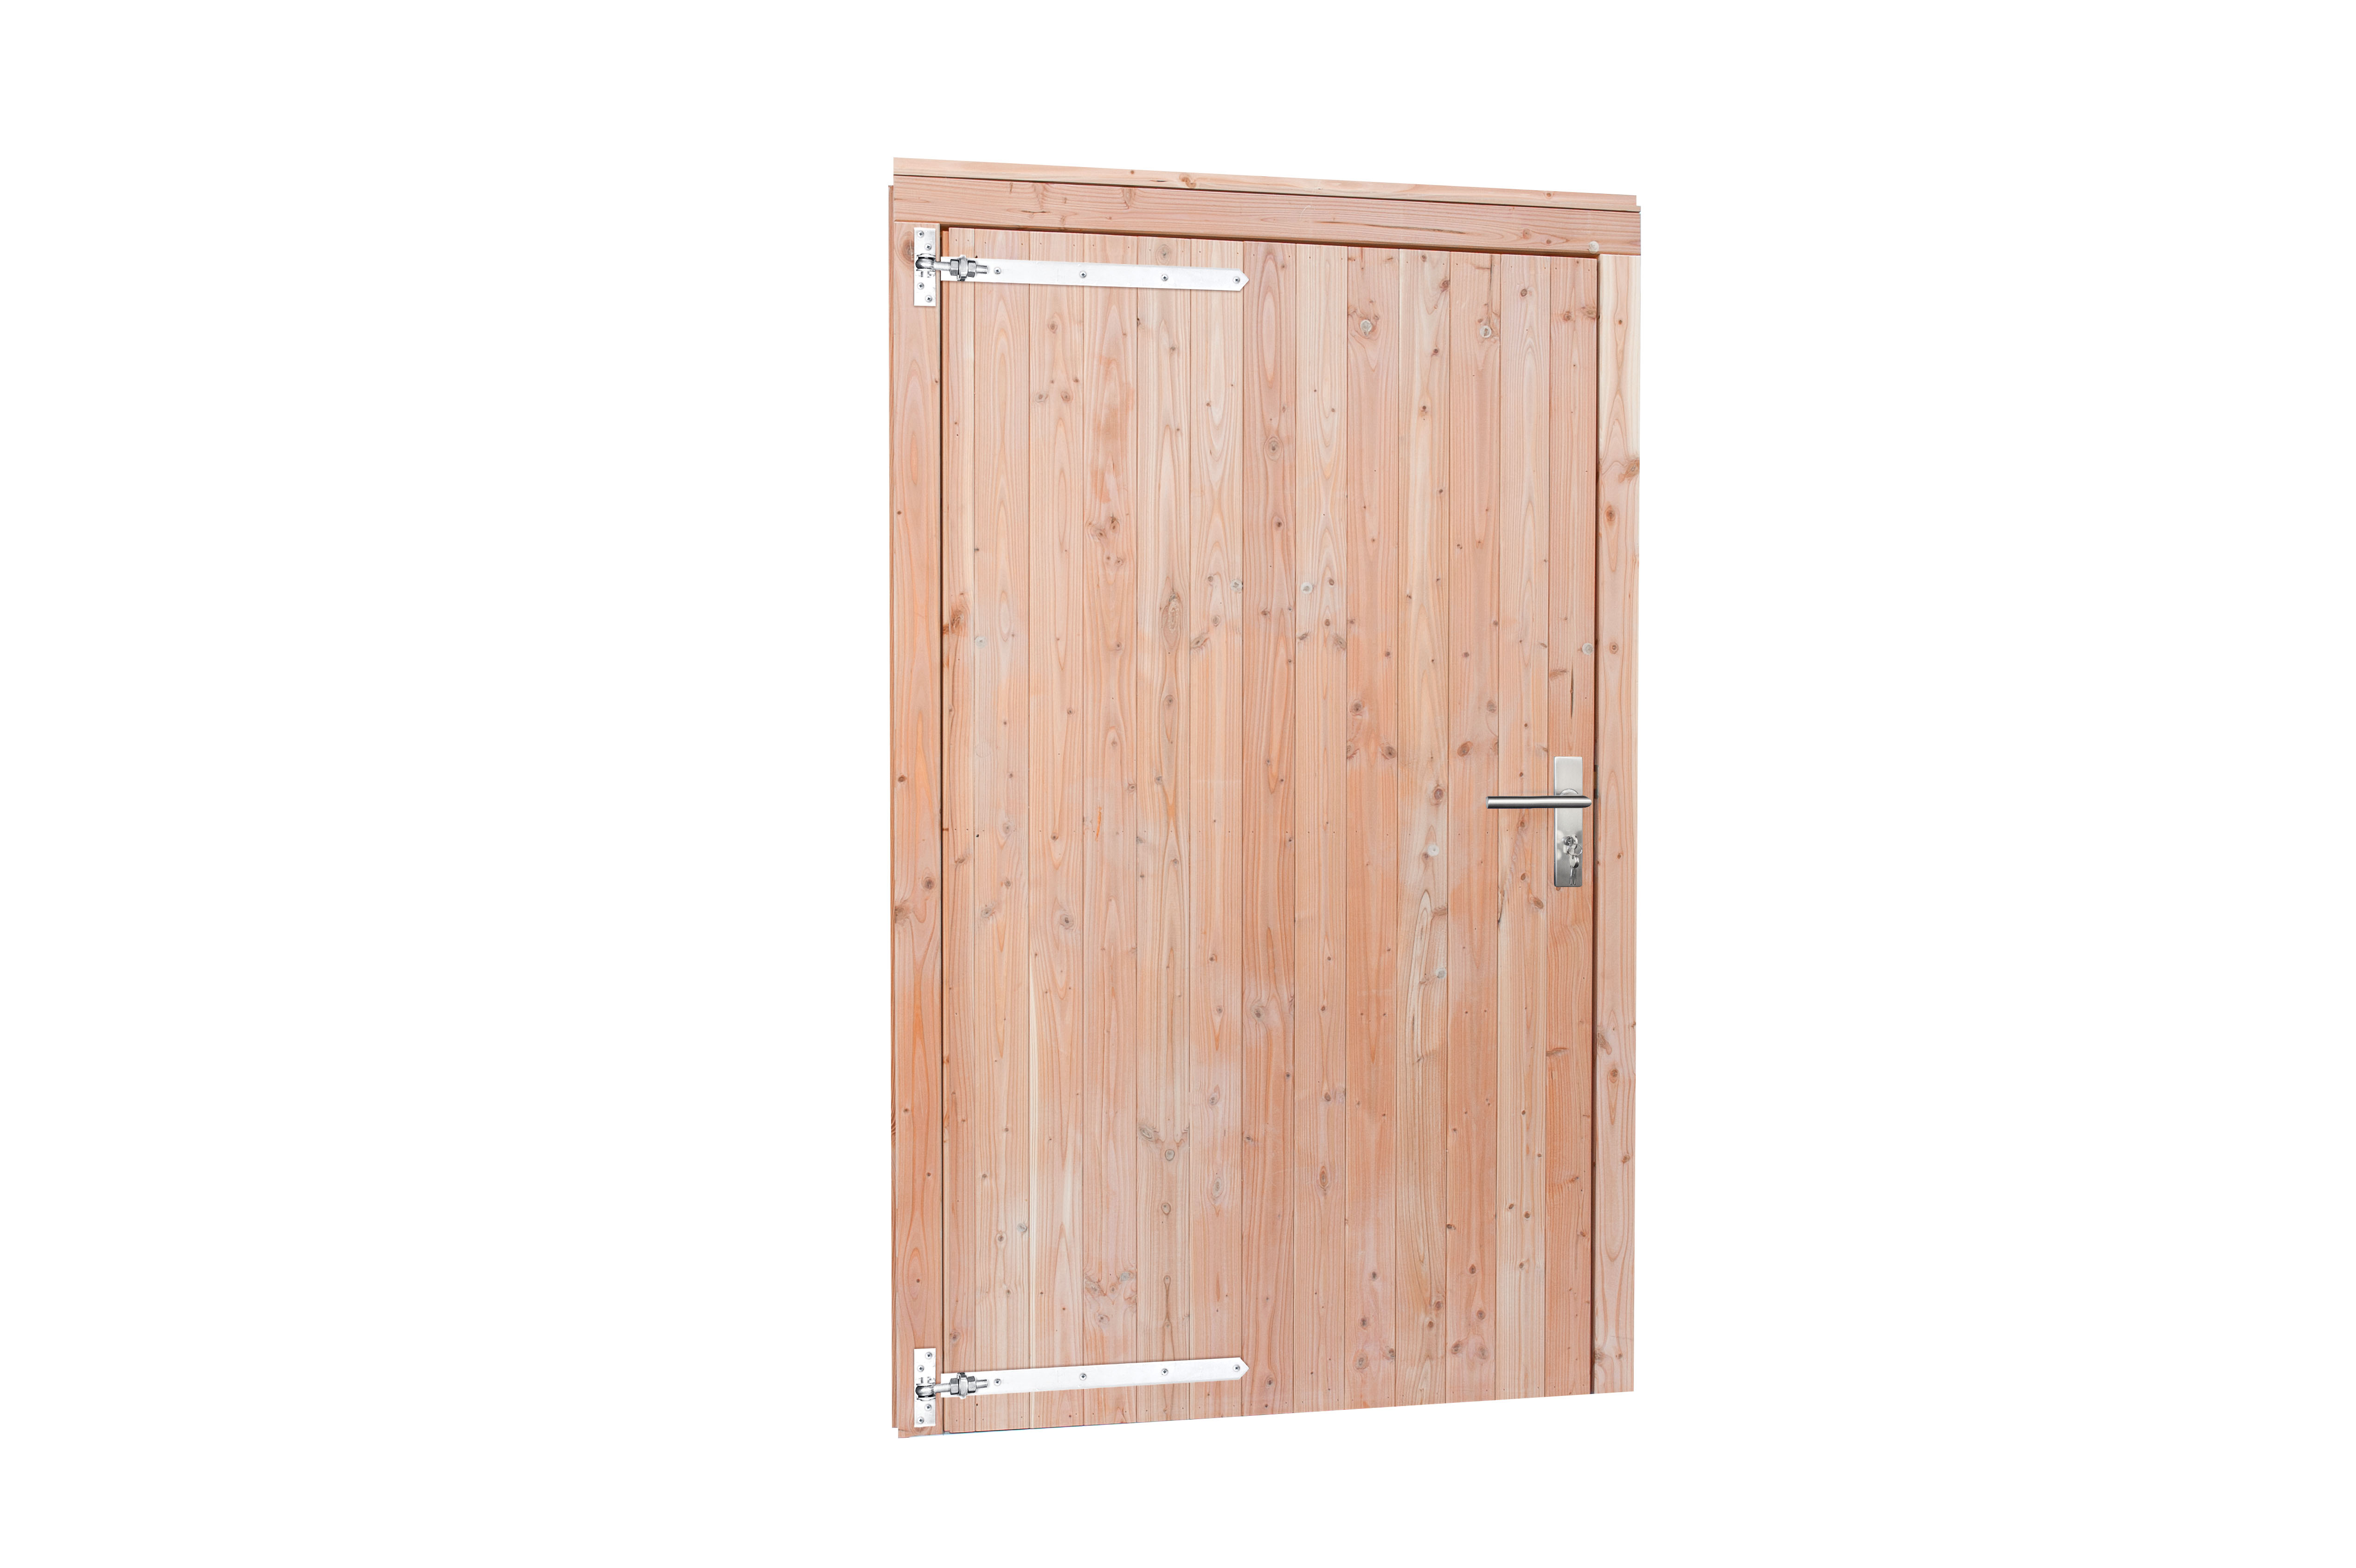 Woodvision | Douglas enkele brede deur | Dicht | 110 x 215 cm | Groen geïmpregneerd | L